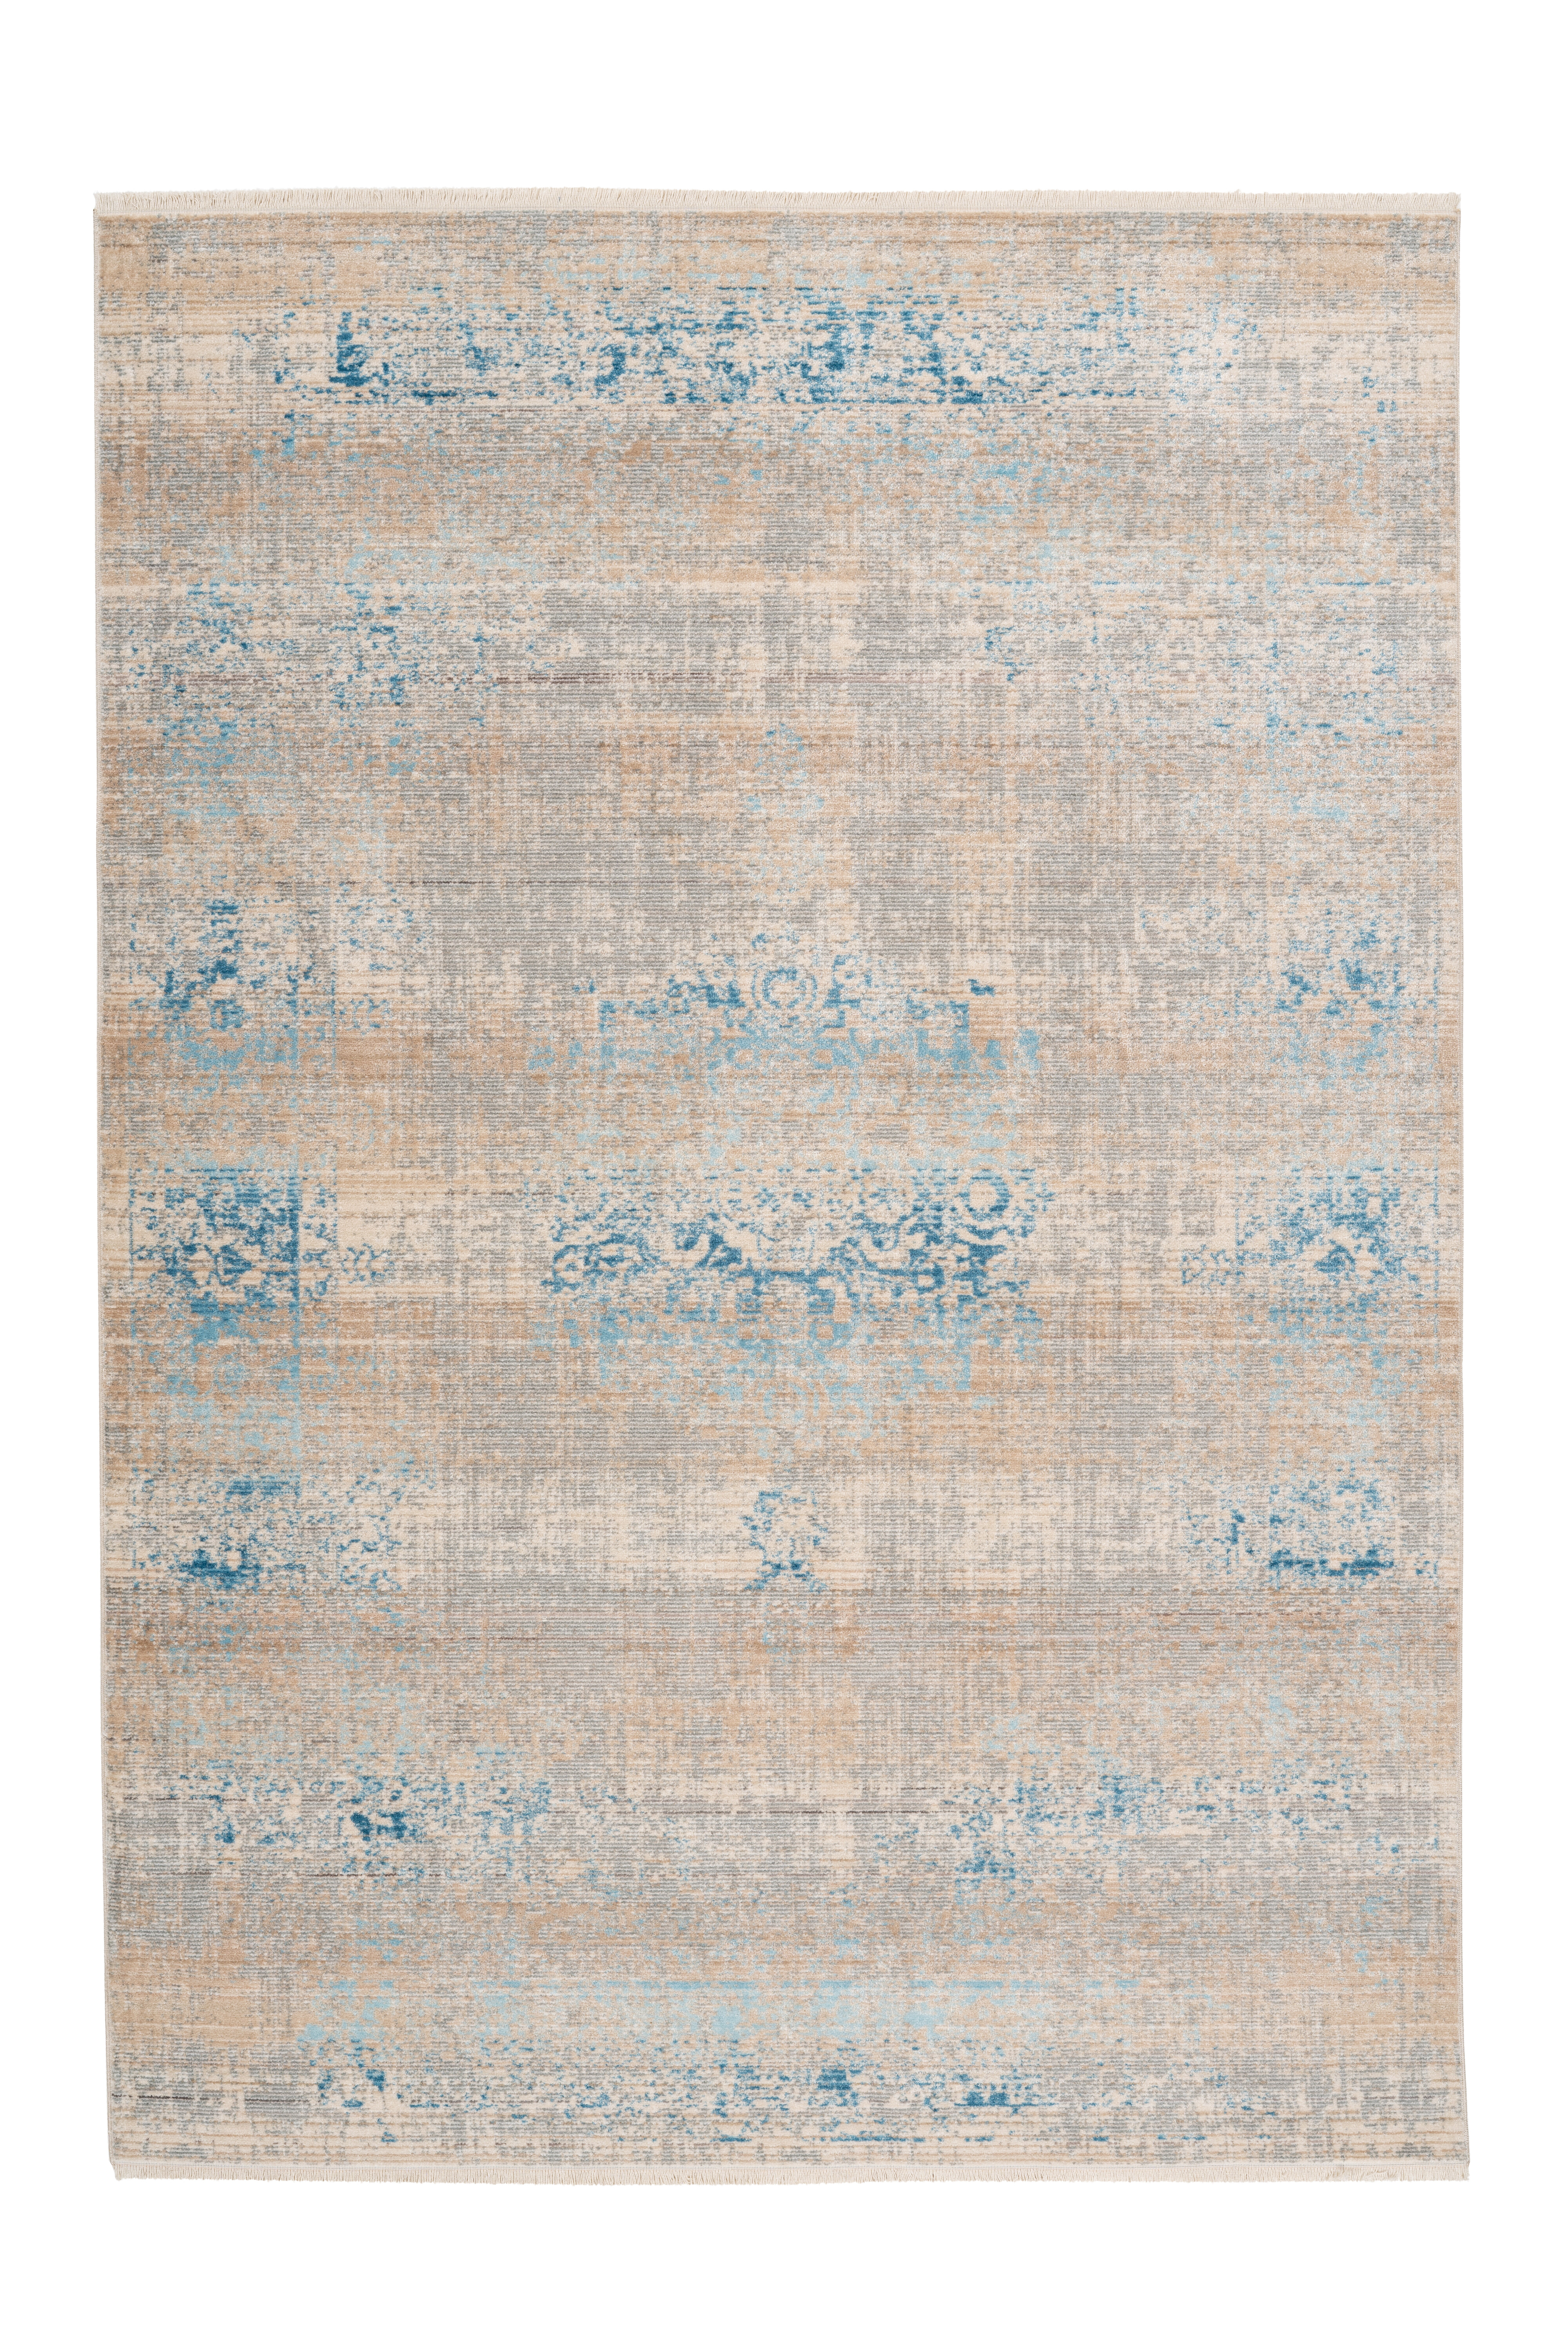 Kayoom Vloerkleed 'Barok 300' kleur Grijs / Turquoise, 200 x 290cm